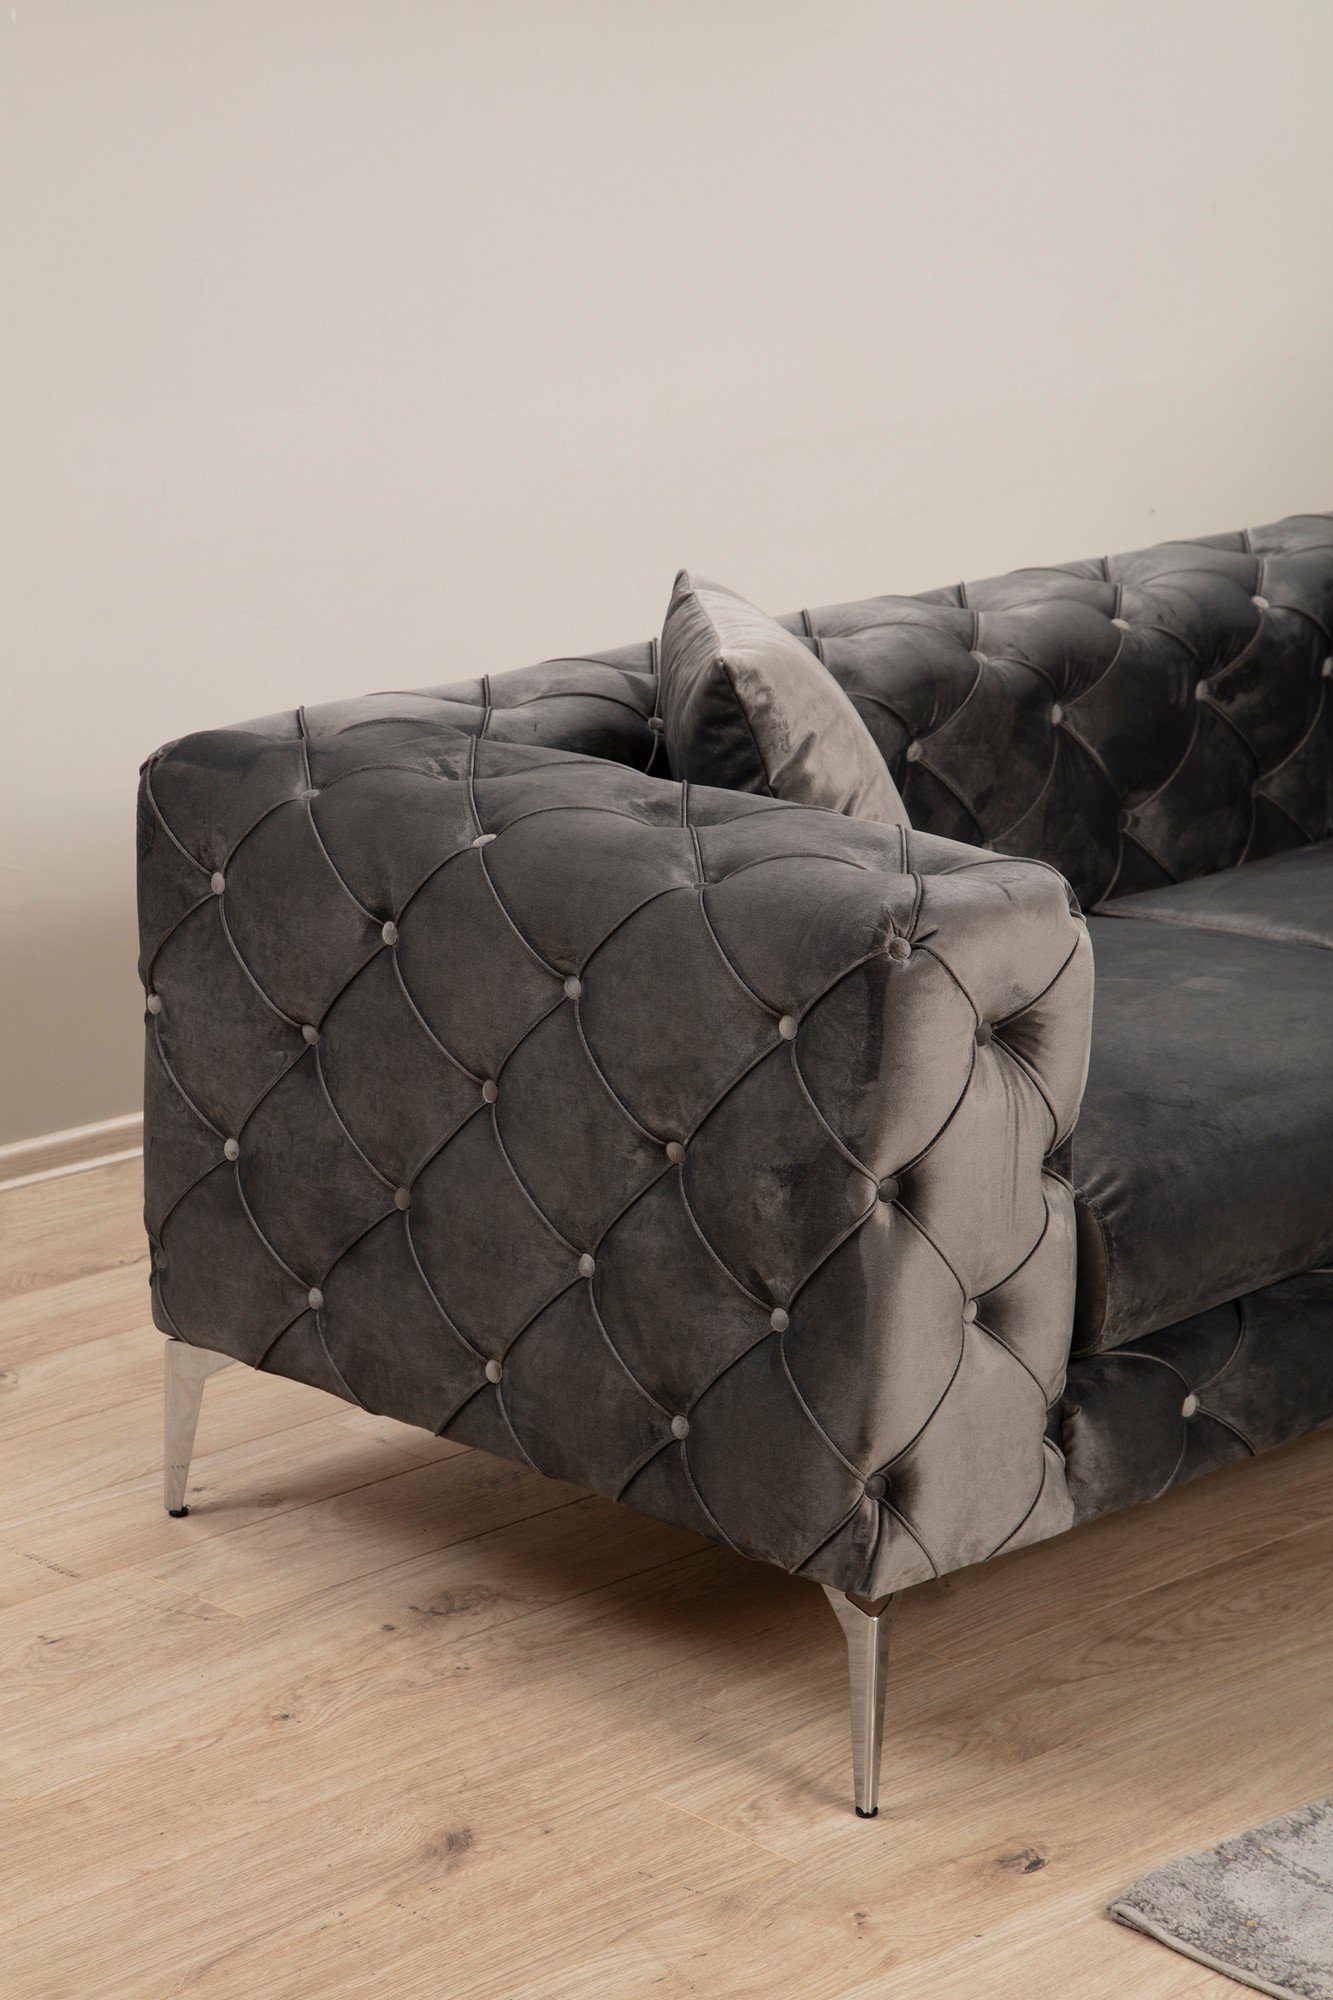 Sofa x 45 cm Skye 45 Decor HLN1111 cm